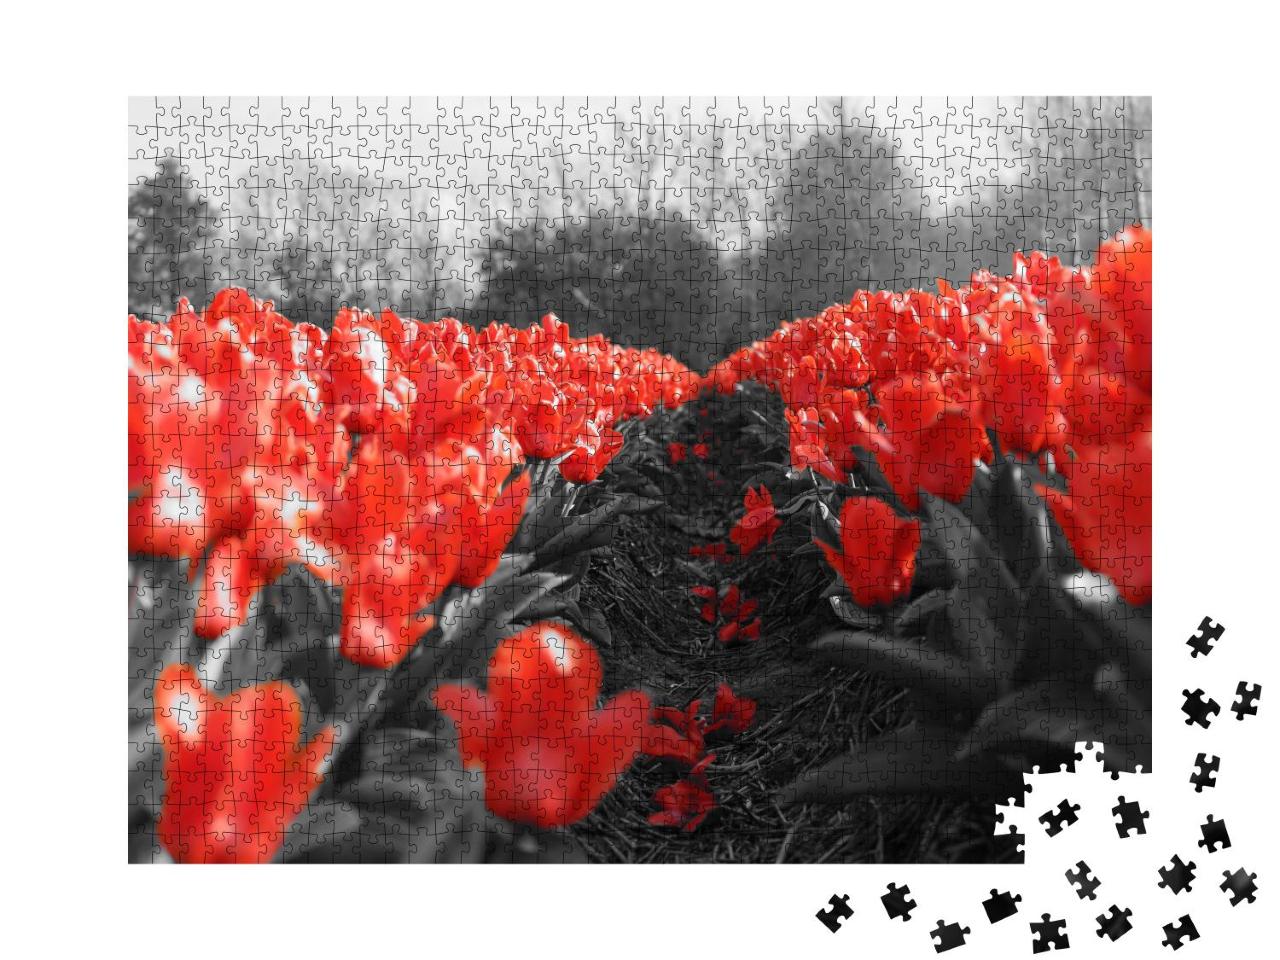 Puzzle 1000 Teile „Rote Tulpen auf dem Feld“